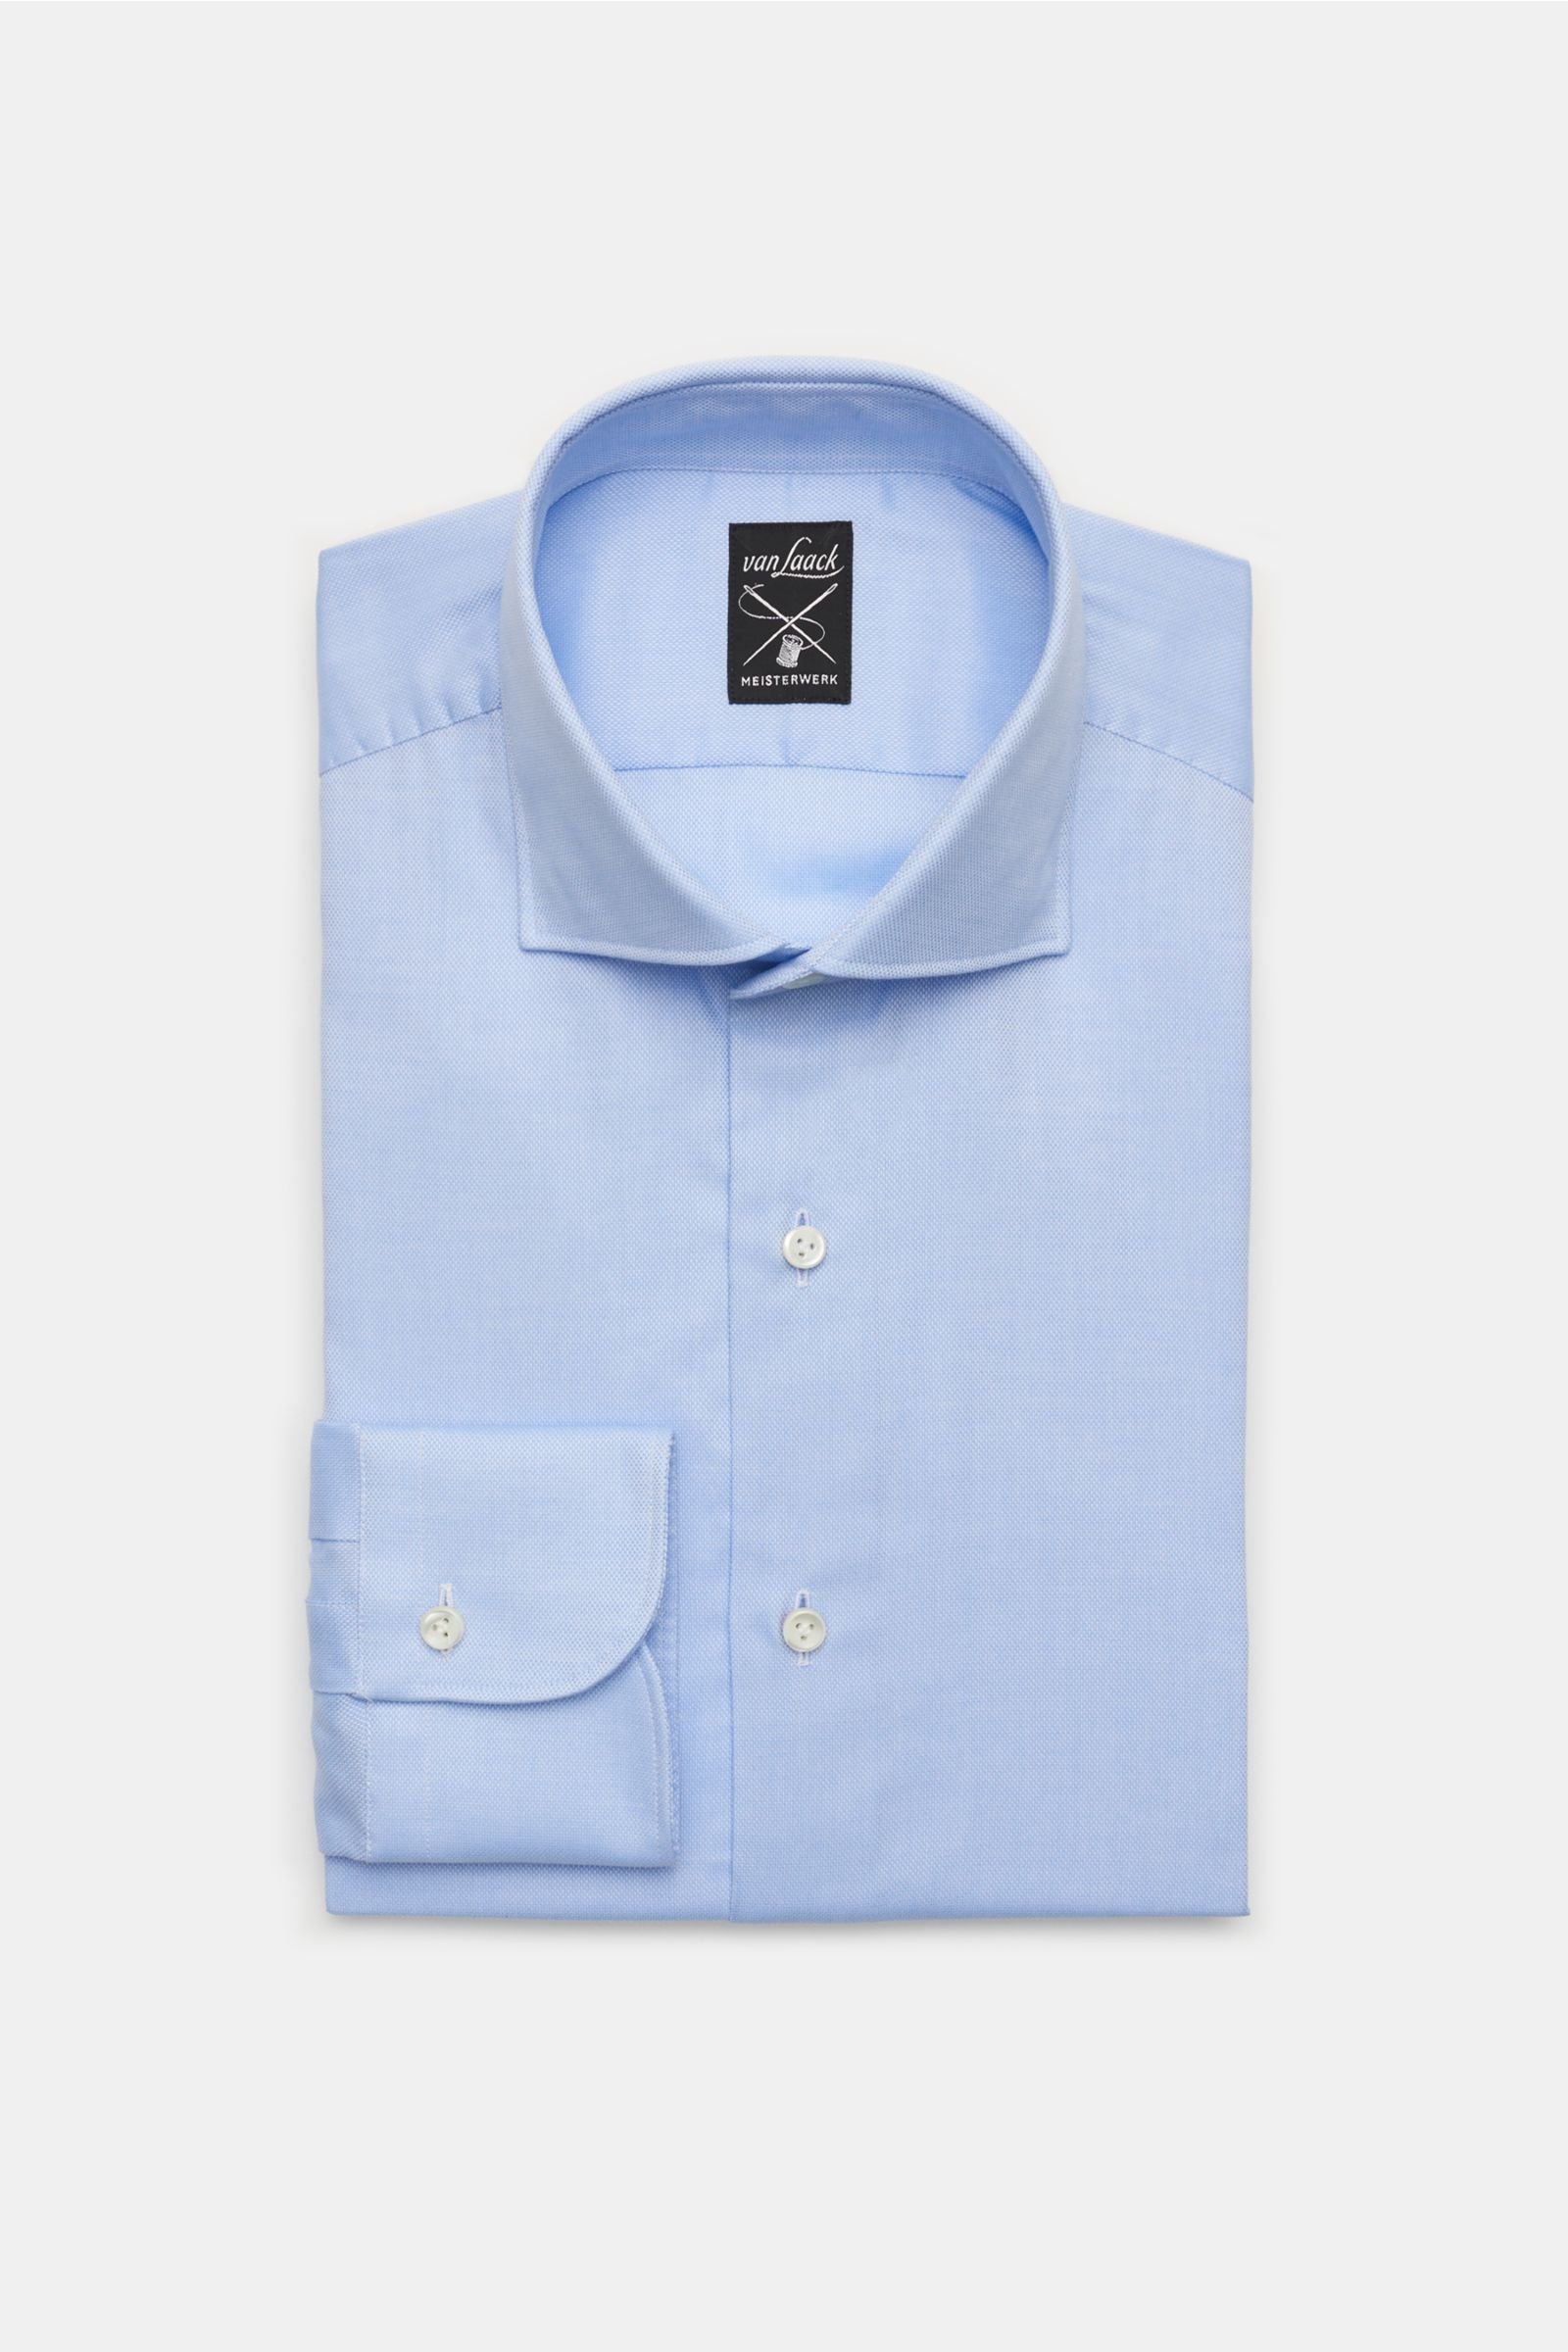 Oxford shirt 'Mivara Tailor Fit' shark collar light blue